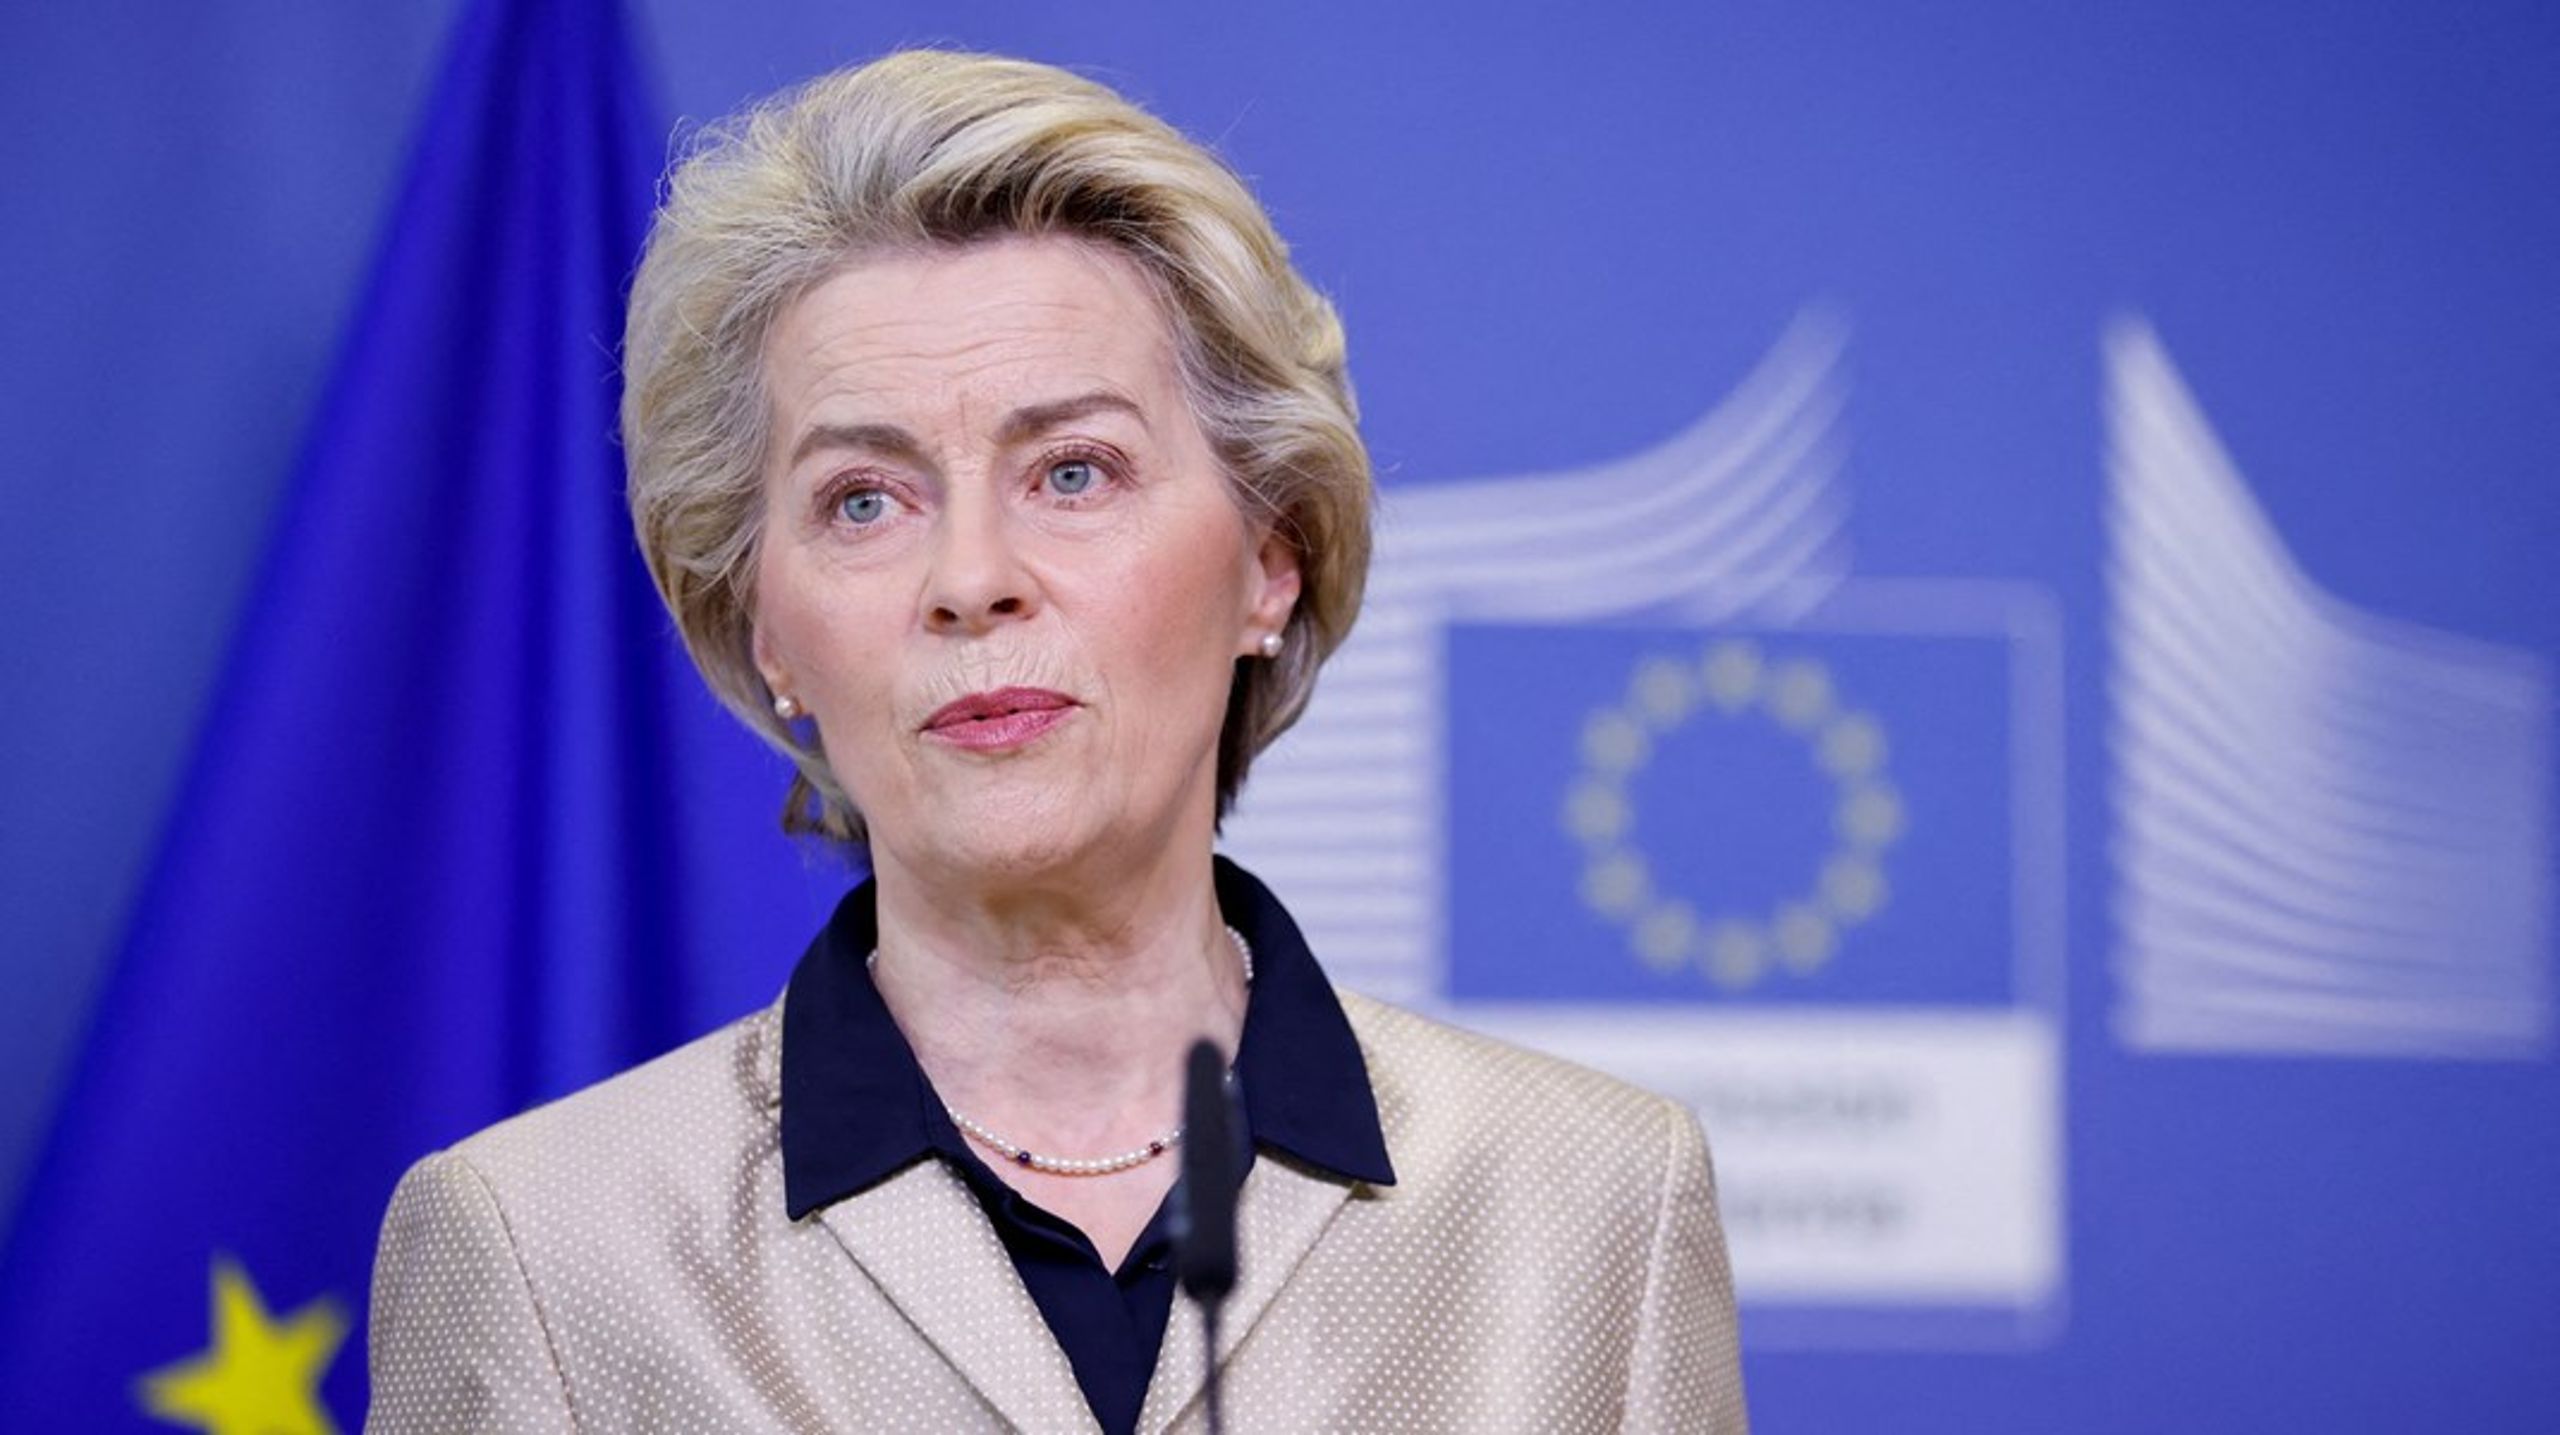 Efter uformelle høringer med øvrige institutioner bebudede kommissionsformand Ursula von der Leyen oprettelsen af et interinstitutionelt etisk organ. Det etiske organ skal dække over alle medlemmer af EU-institutionerne.